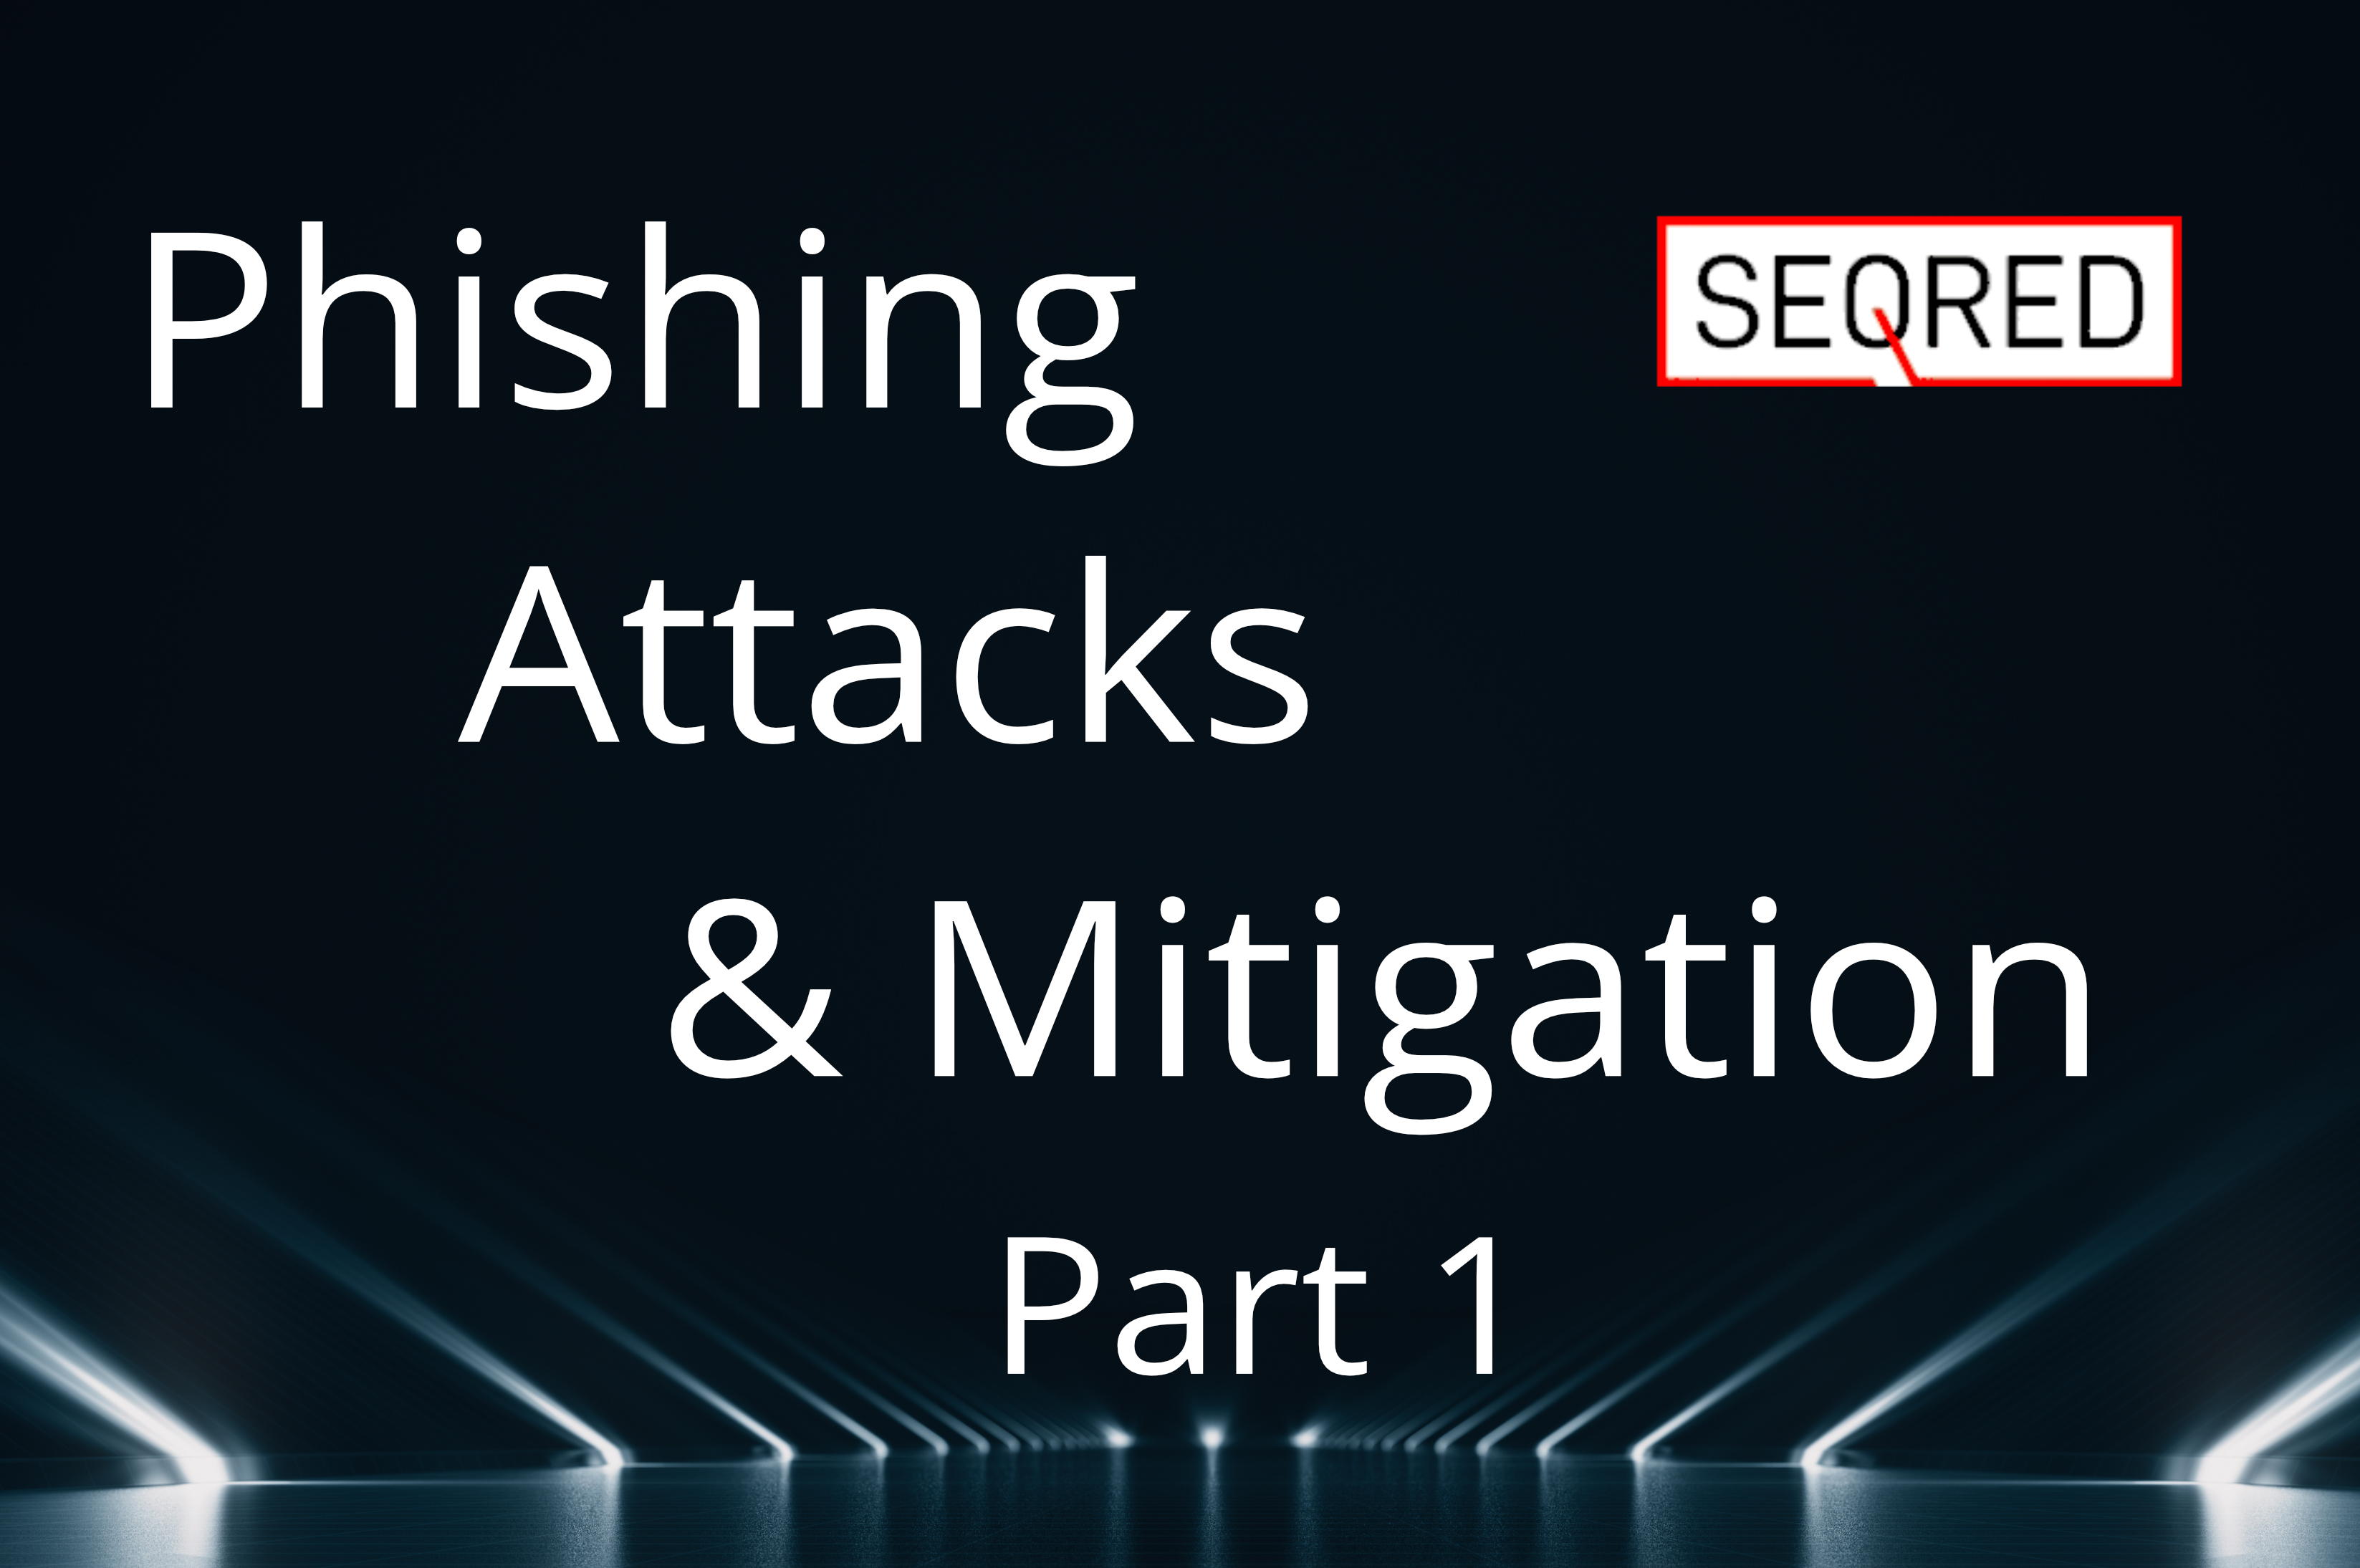 Phishing attacks & mitigation